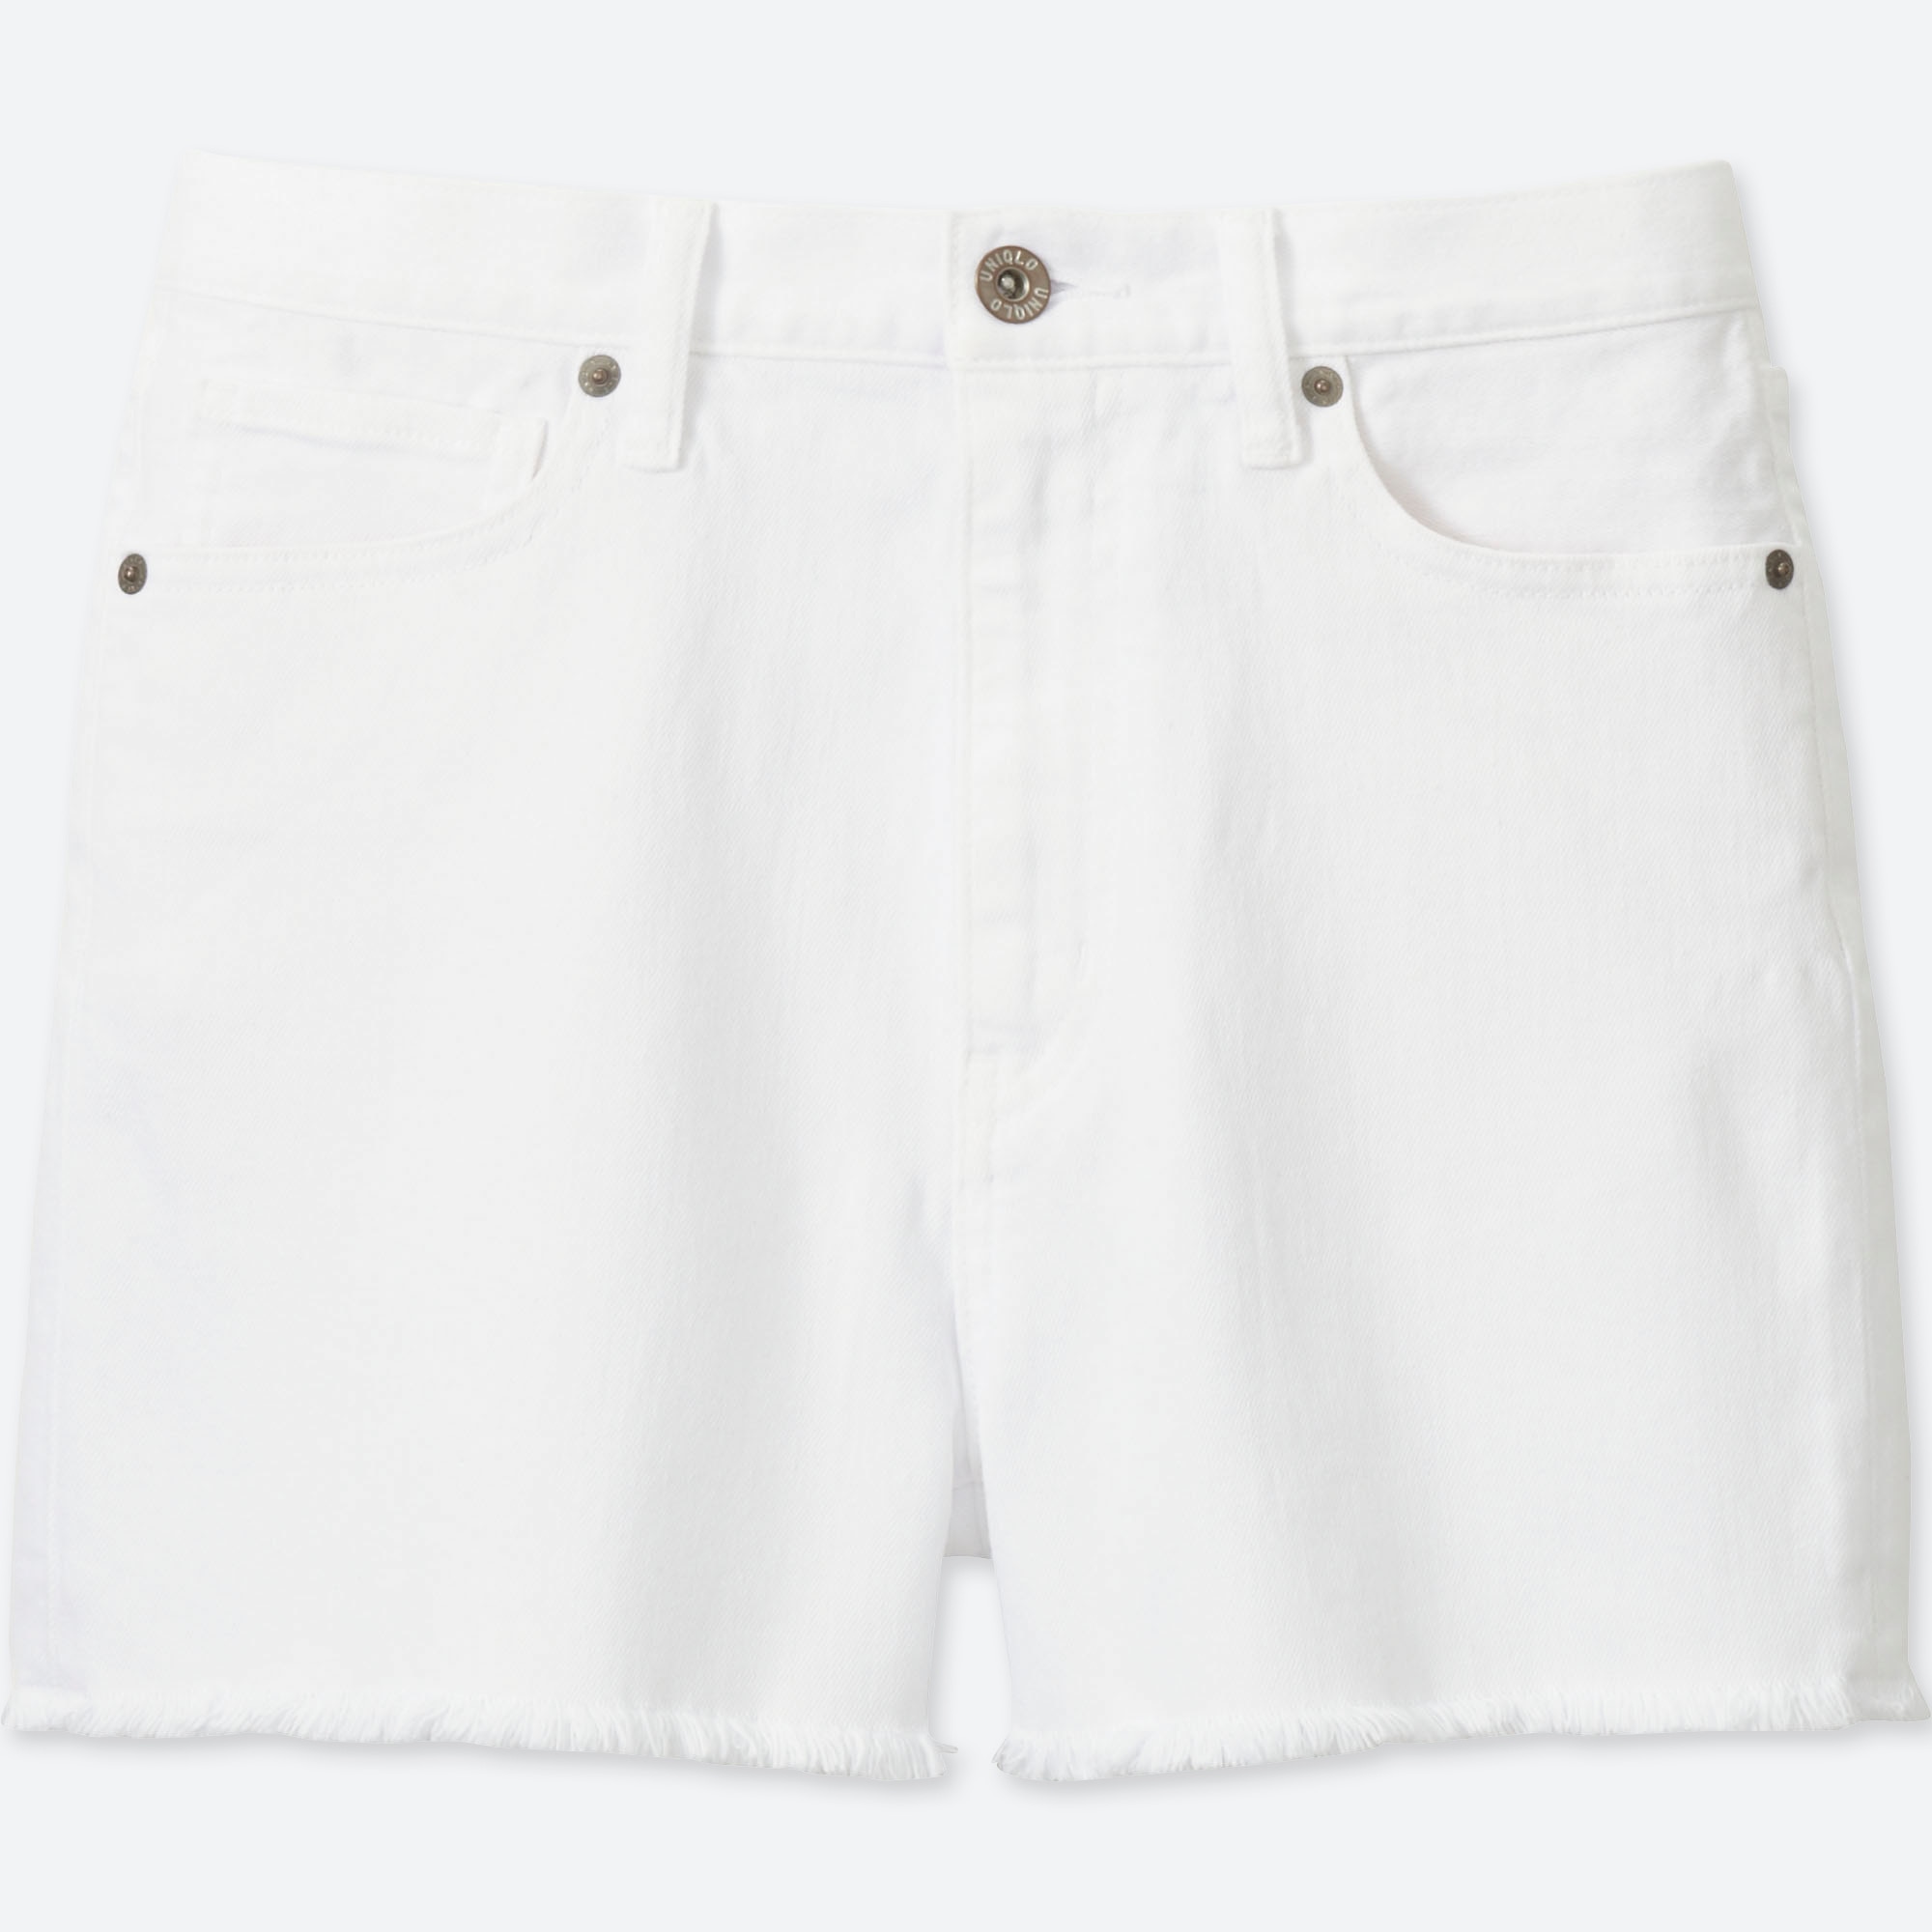 high rise white denim shorts